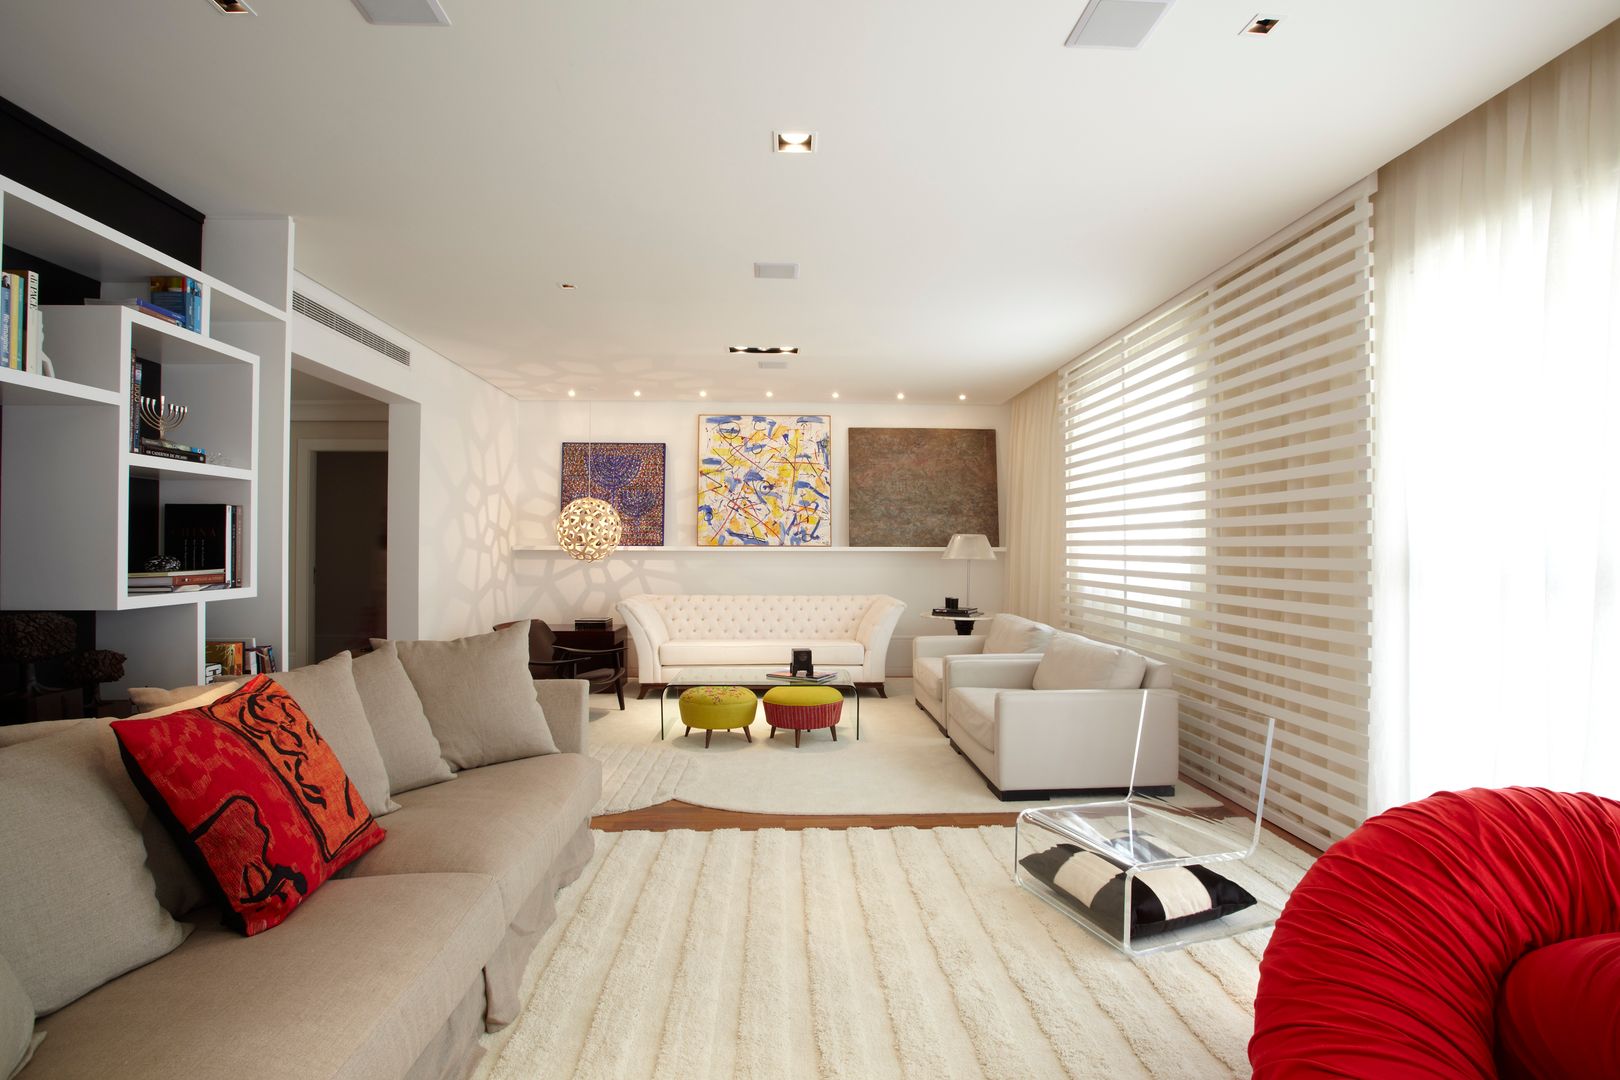 Apartamento Alto de Pinheiros (villa lobos): 450m2, Viviane Dinamarco Design de Interiores Viviane Dinamarco Design de Interiores 모던스타일 거실 소파 & 안락 의자